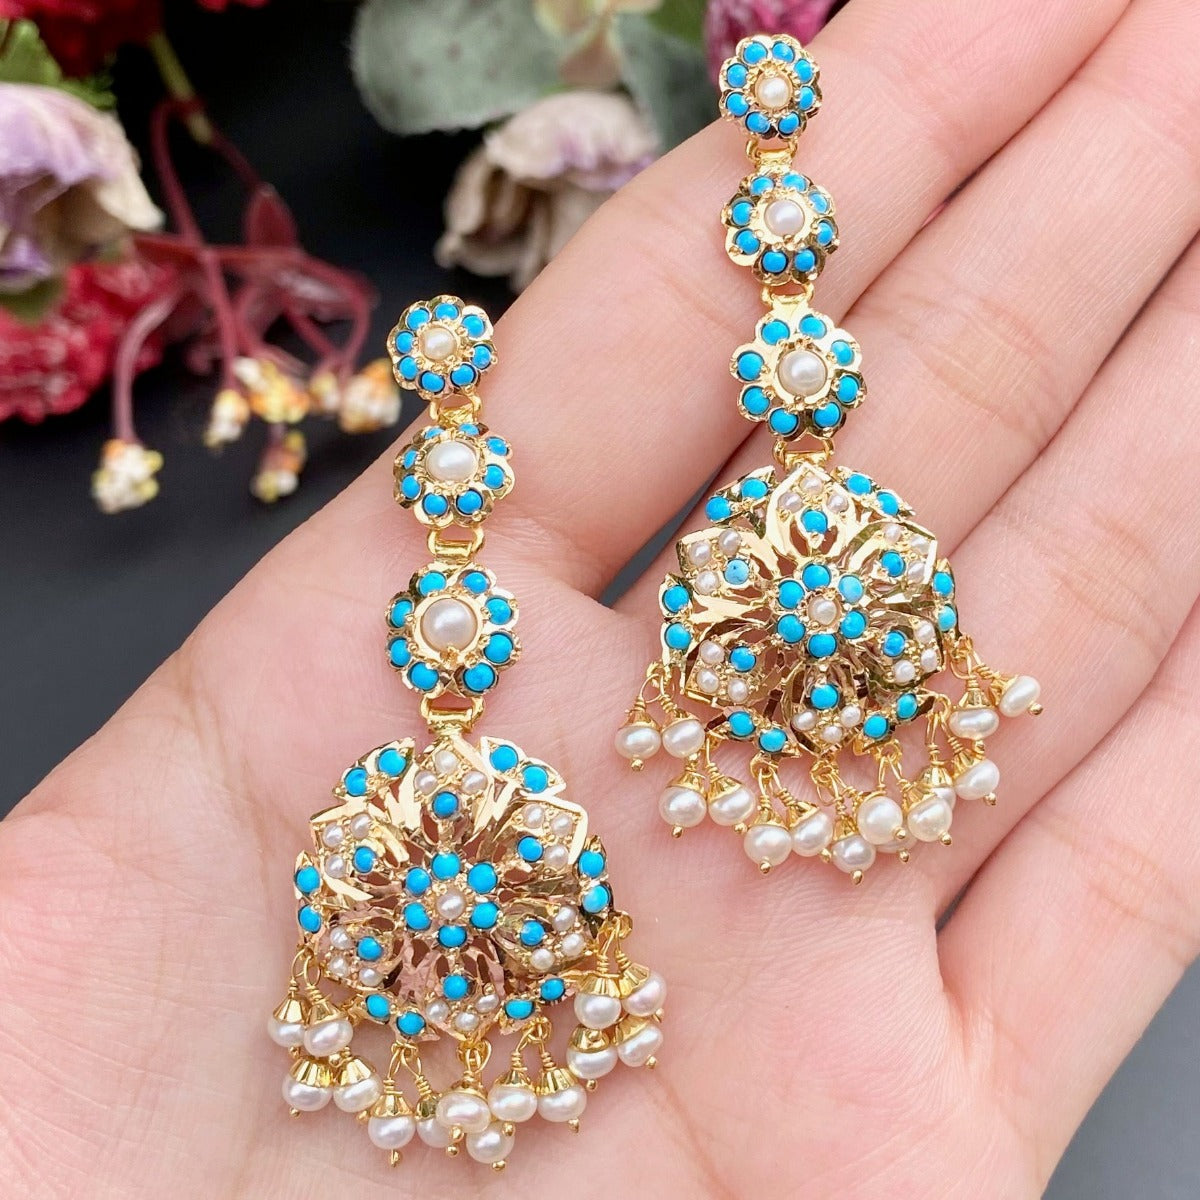 firoza earrings on 22k gold. feroza earrings latest design